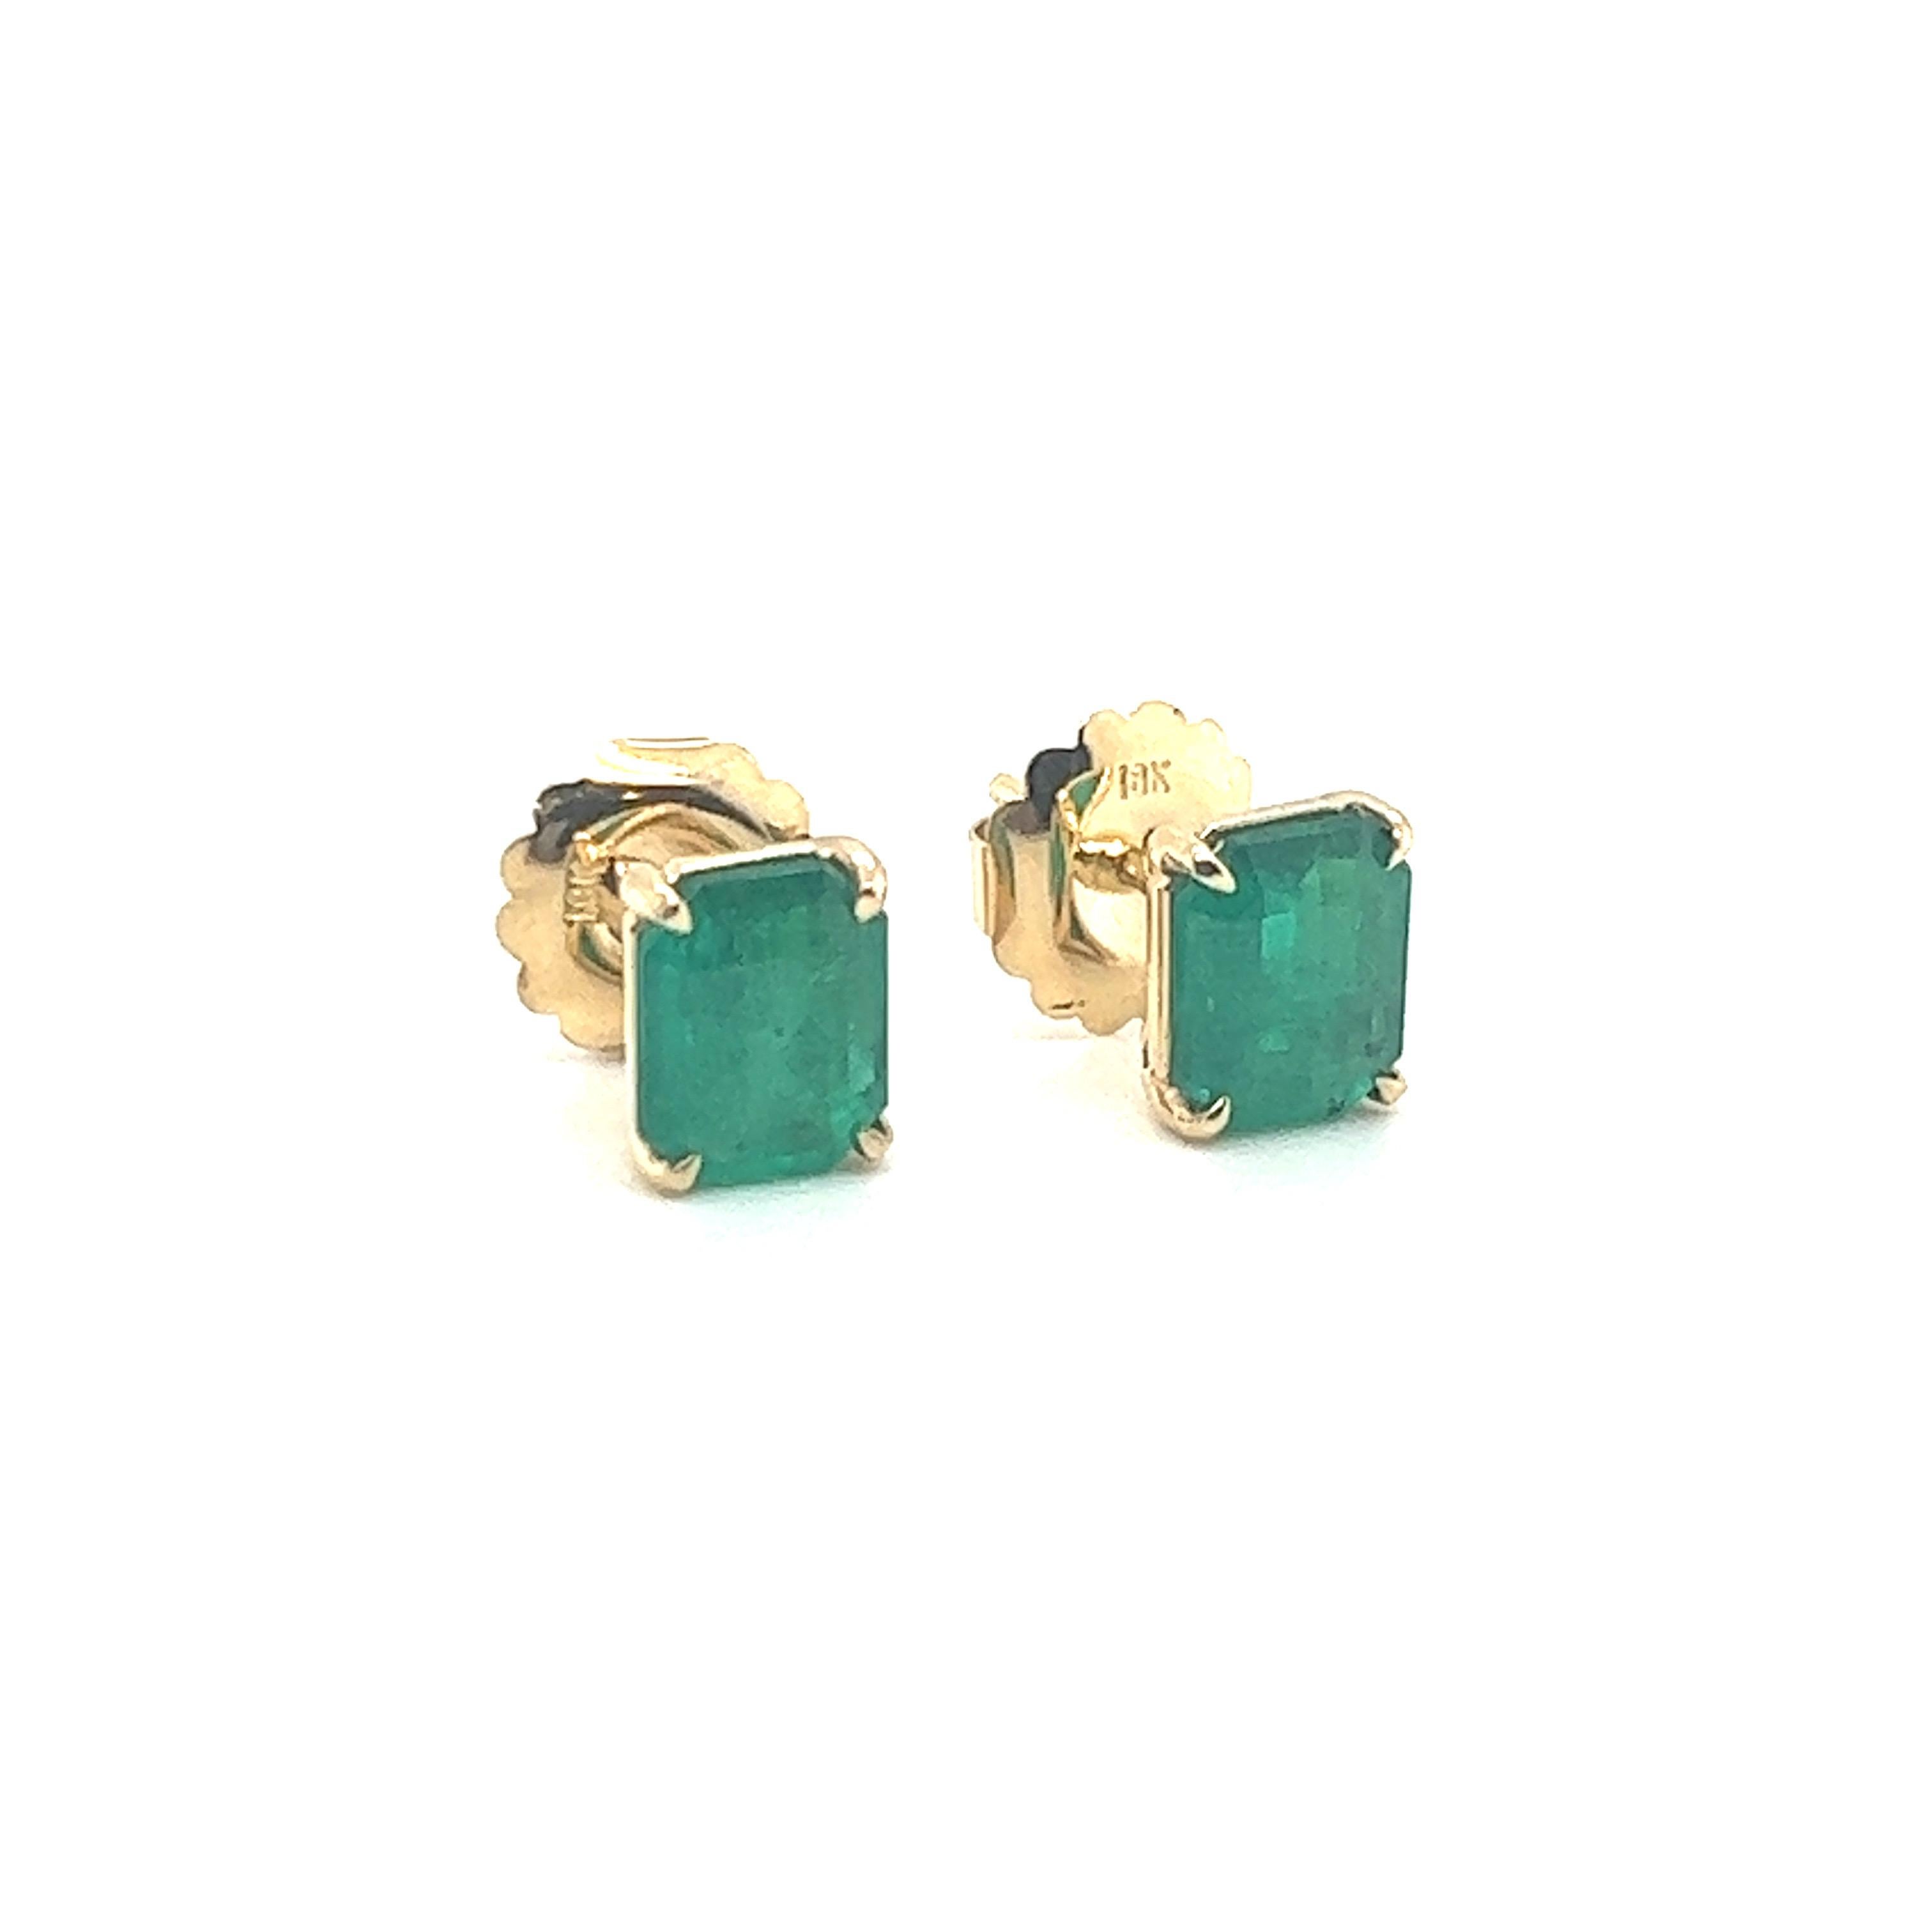 4 Carat Colombian Emerald Cut Stud Earrings 18k Yellow Gold For Sale 1